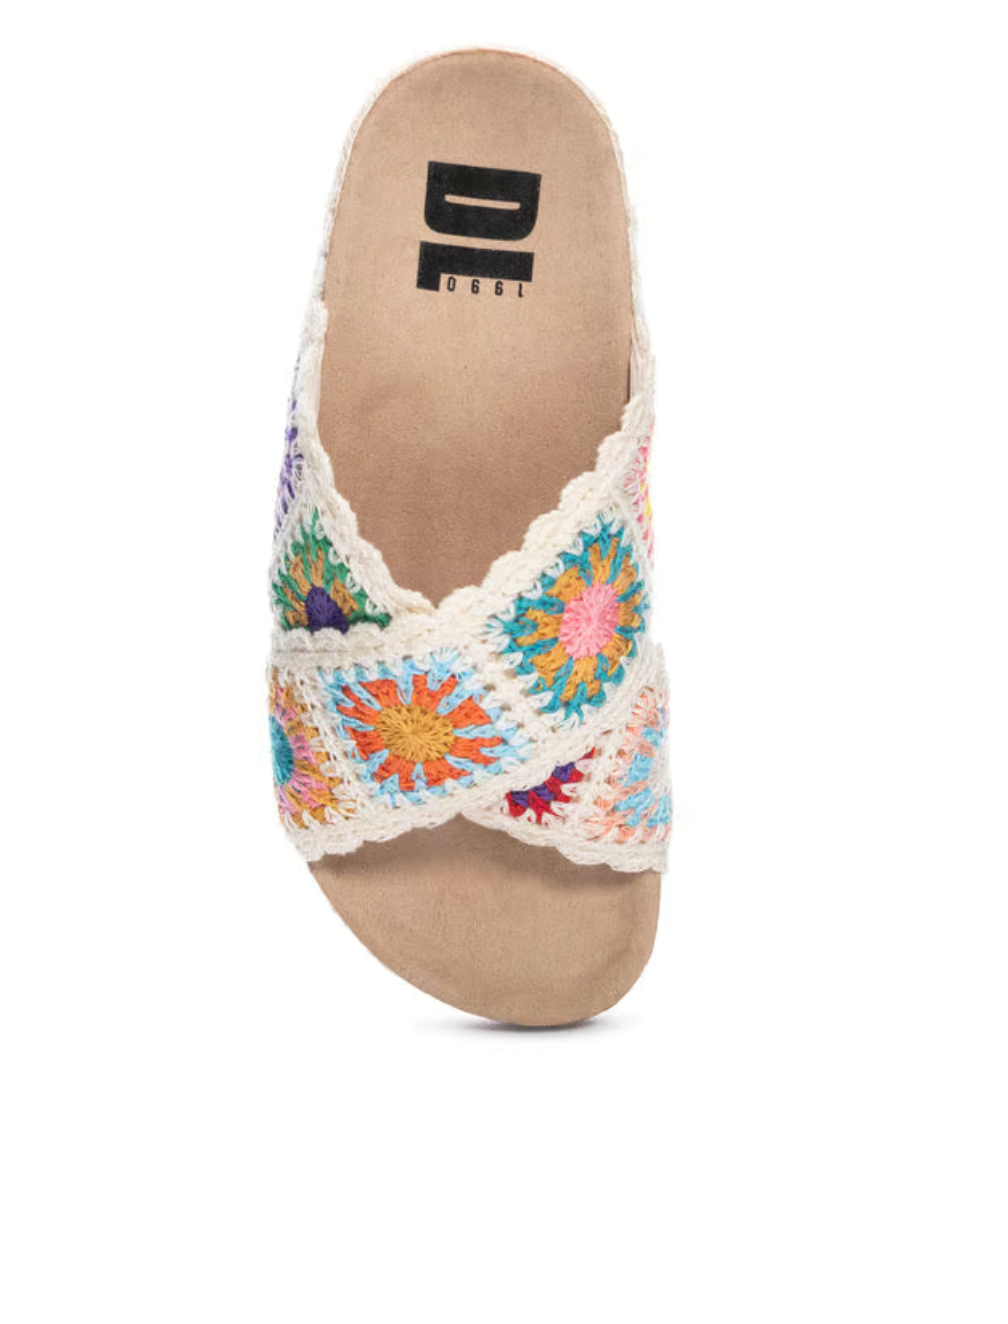 Tacoma Crochet Sandal